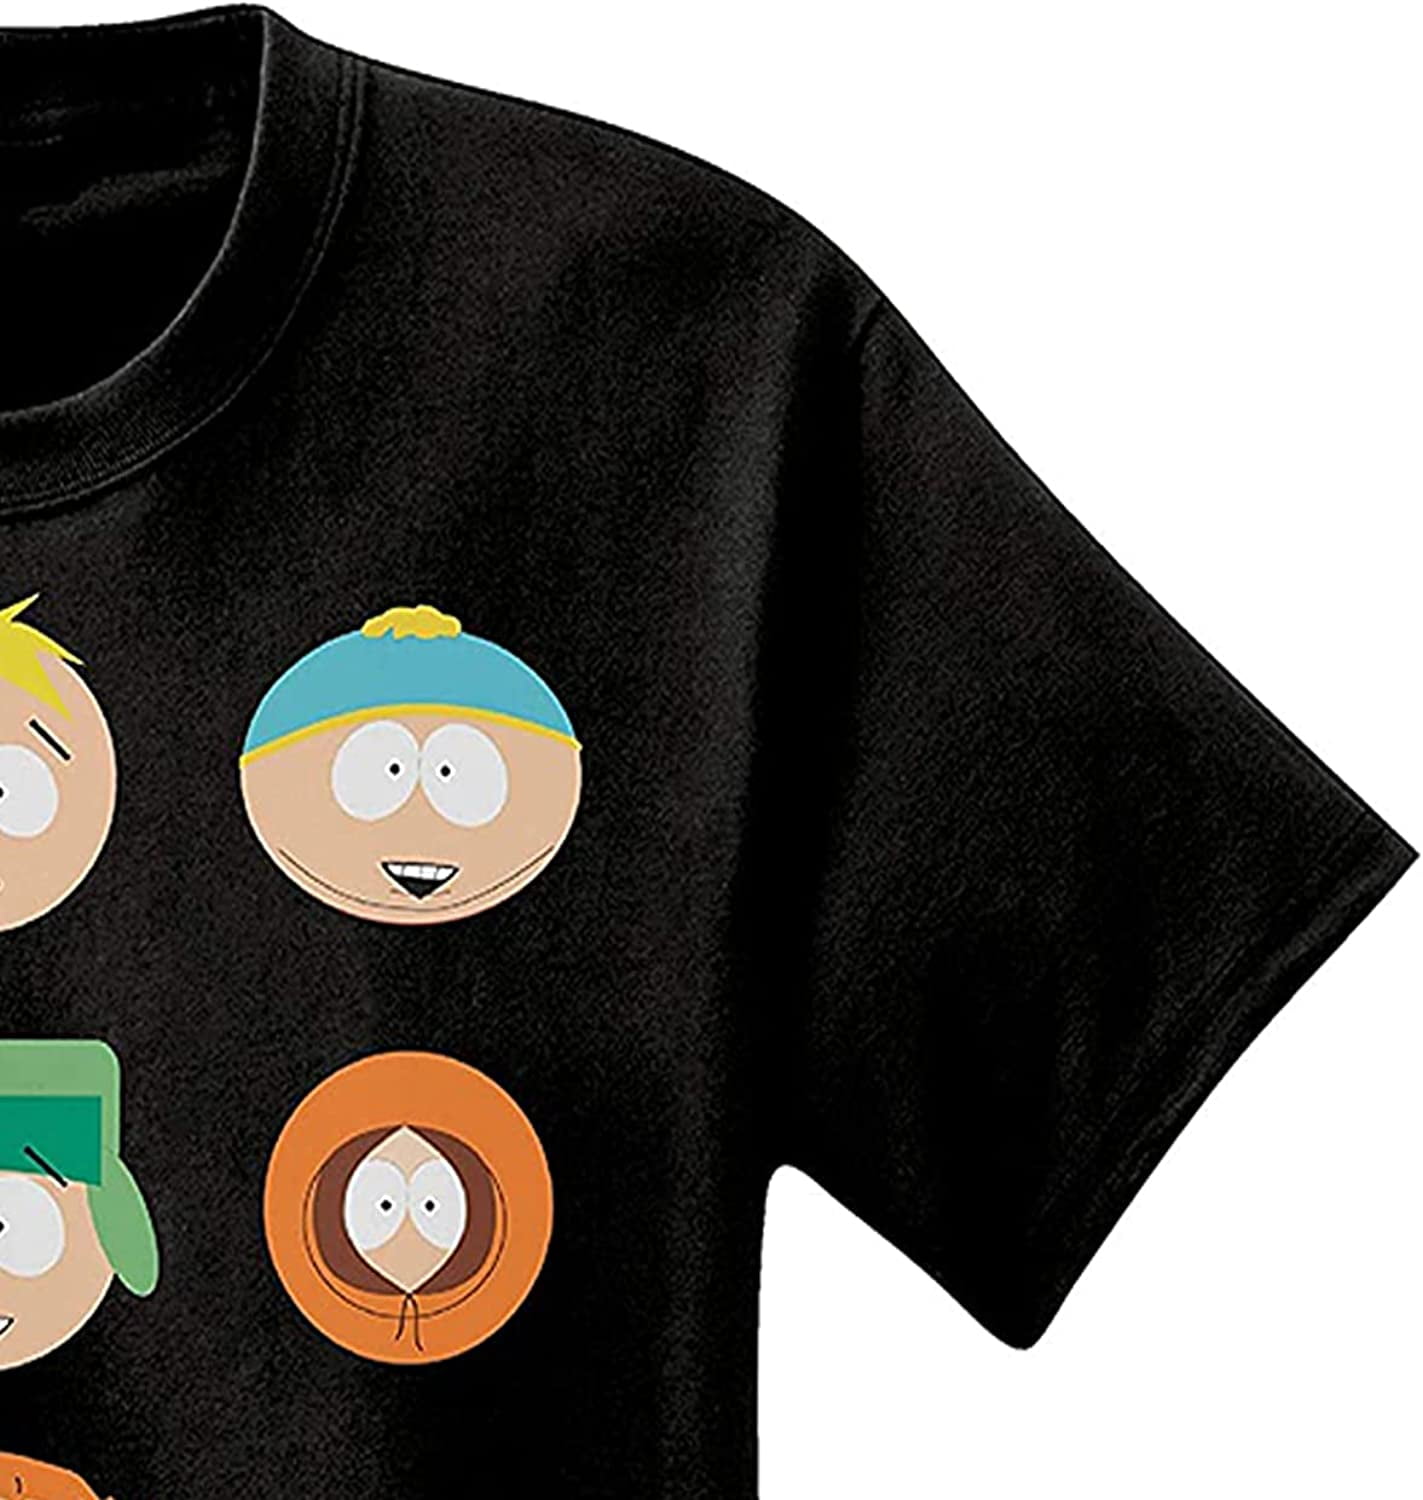 South Park Mens Logo Shirt - Cartman, Kenny, Kyle & Stan Tee - Classic T- Shirt